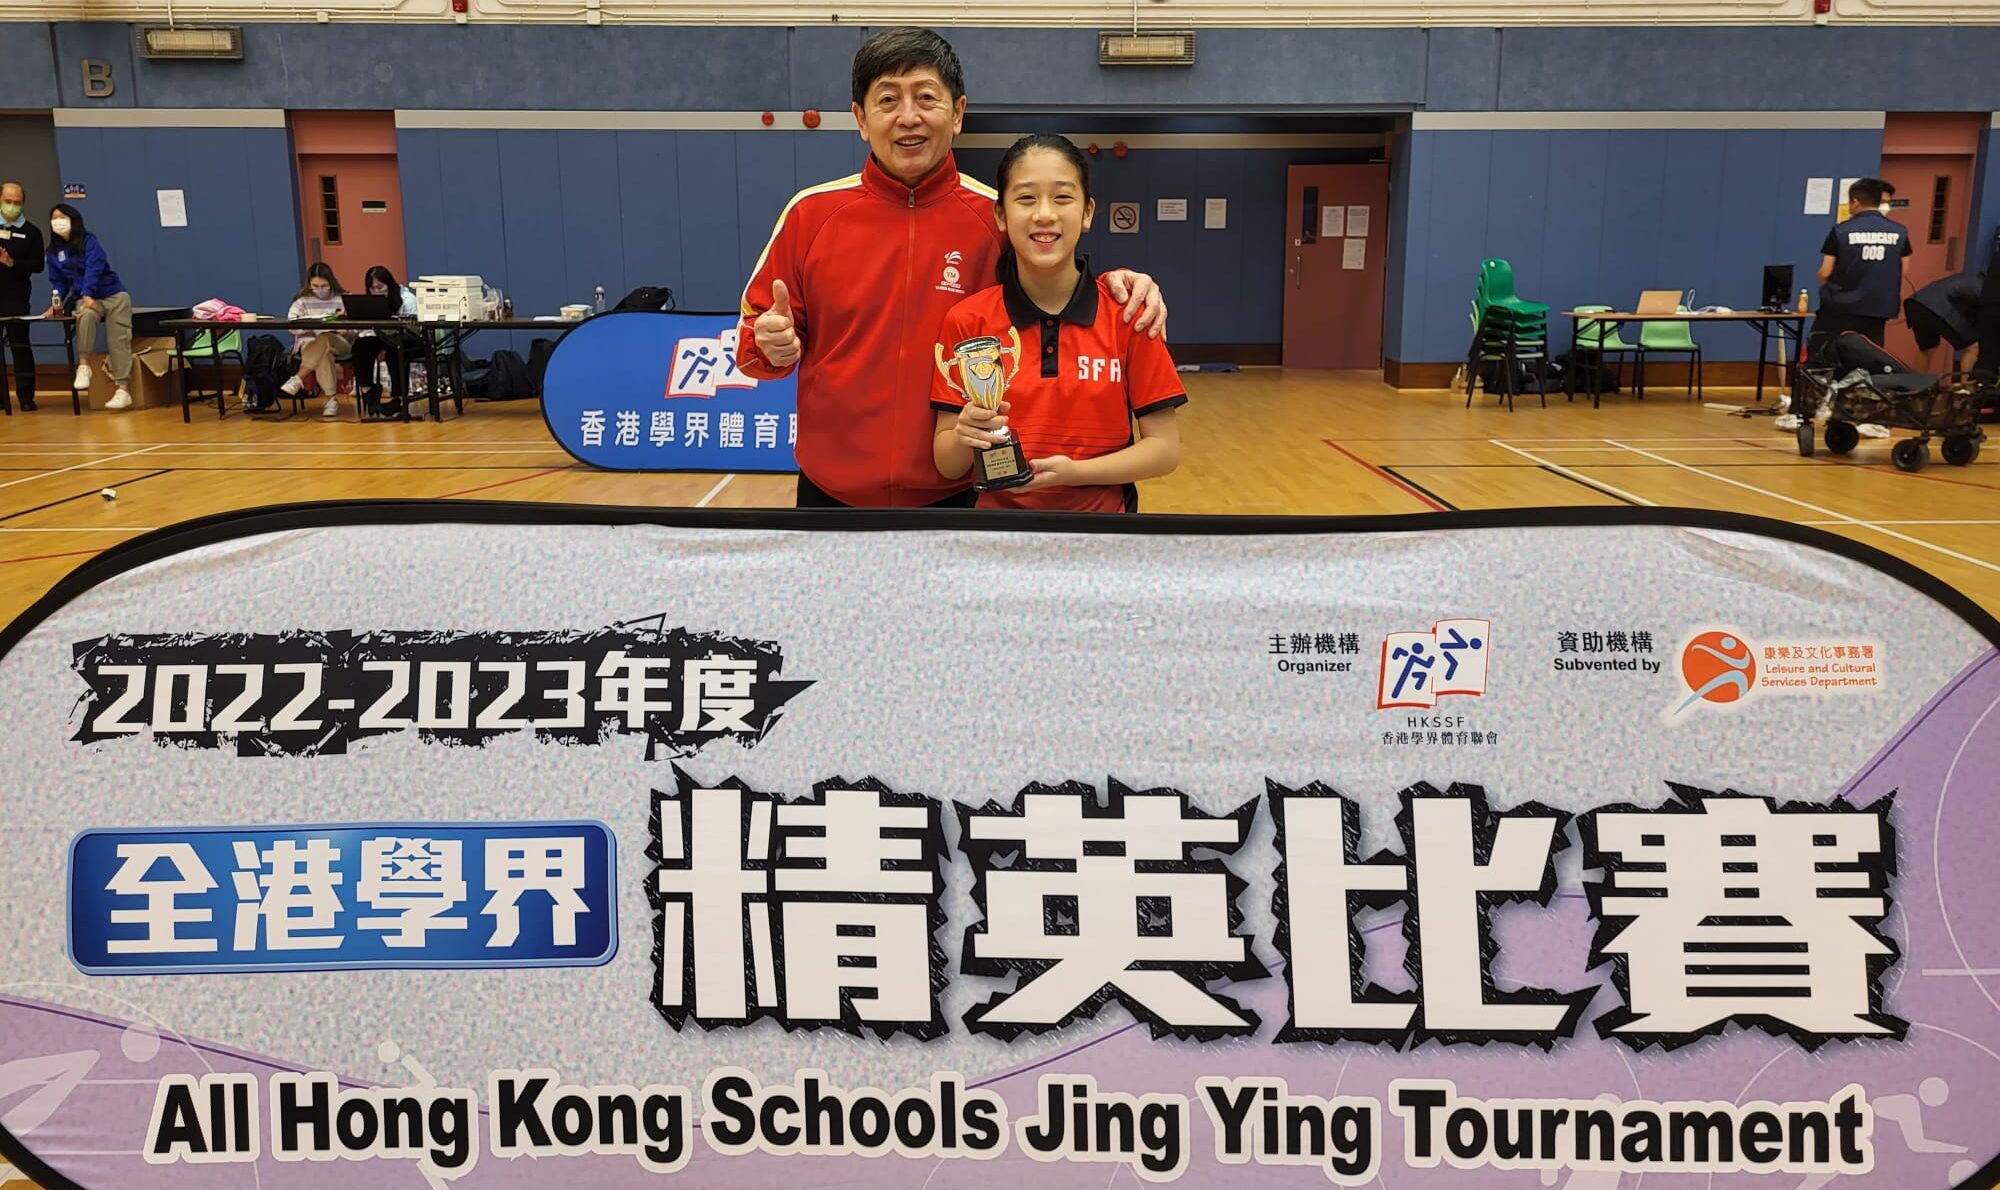 一銘喜訊 : 一銘球員 阮芯諾 蟬聯 「2022-2023年度全港學界精英乒乓球比賽」女子小學組 單打 冠軍